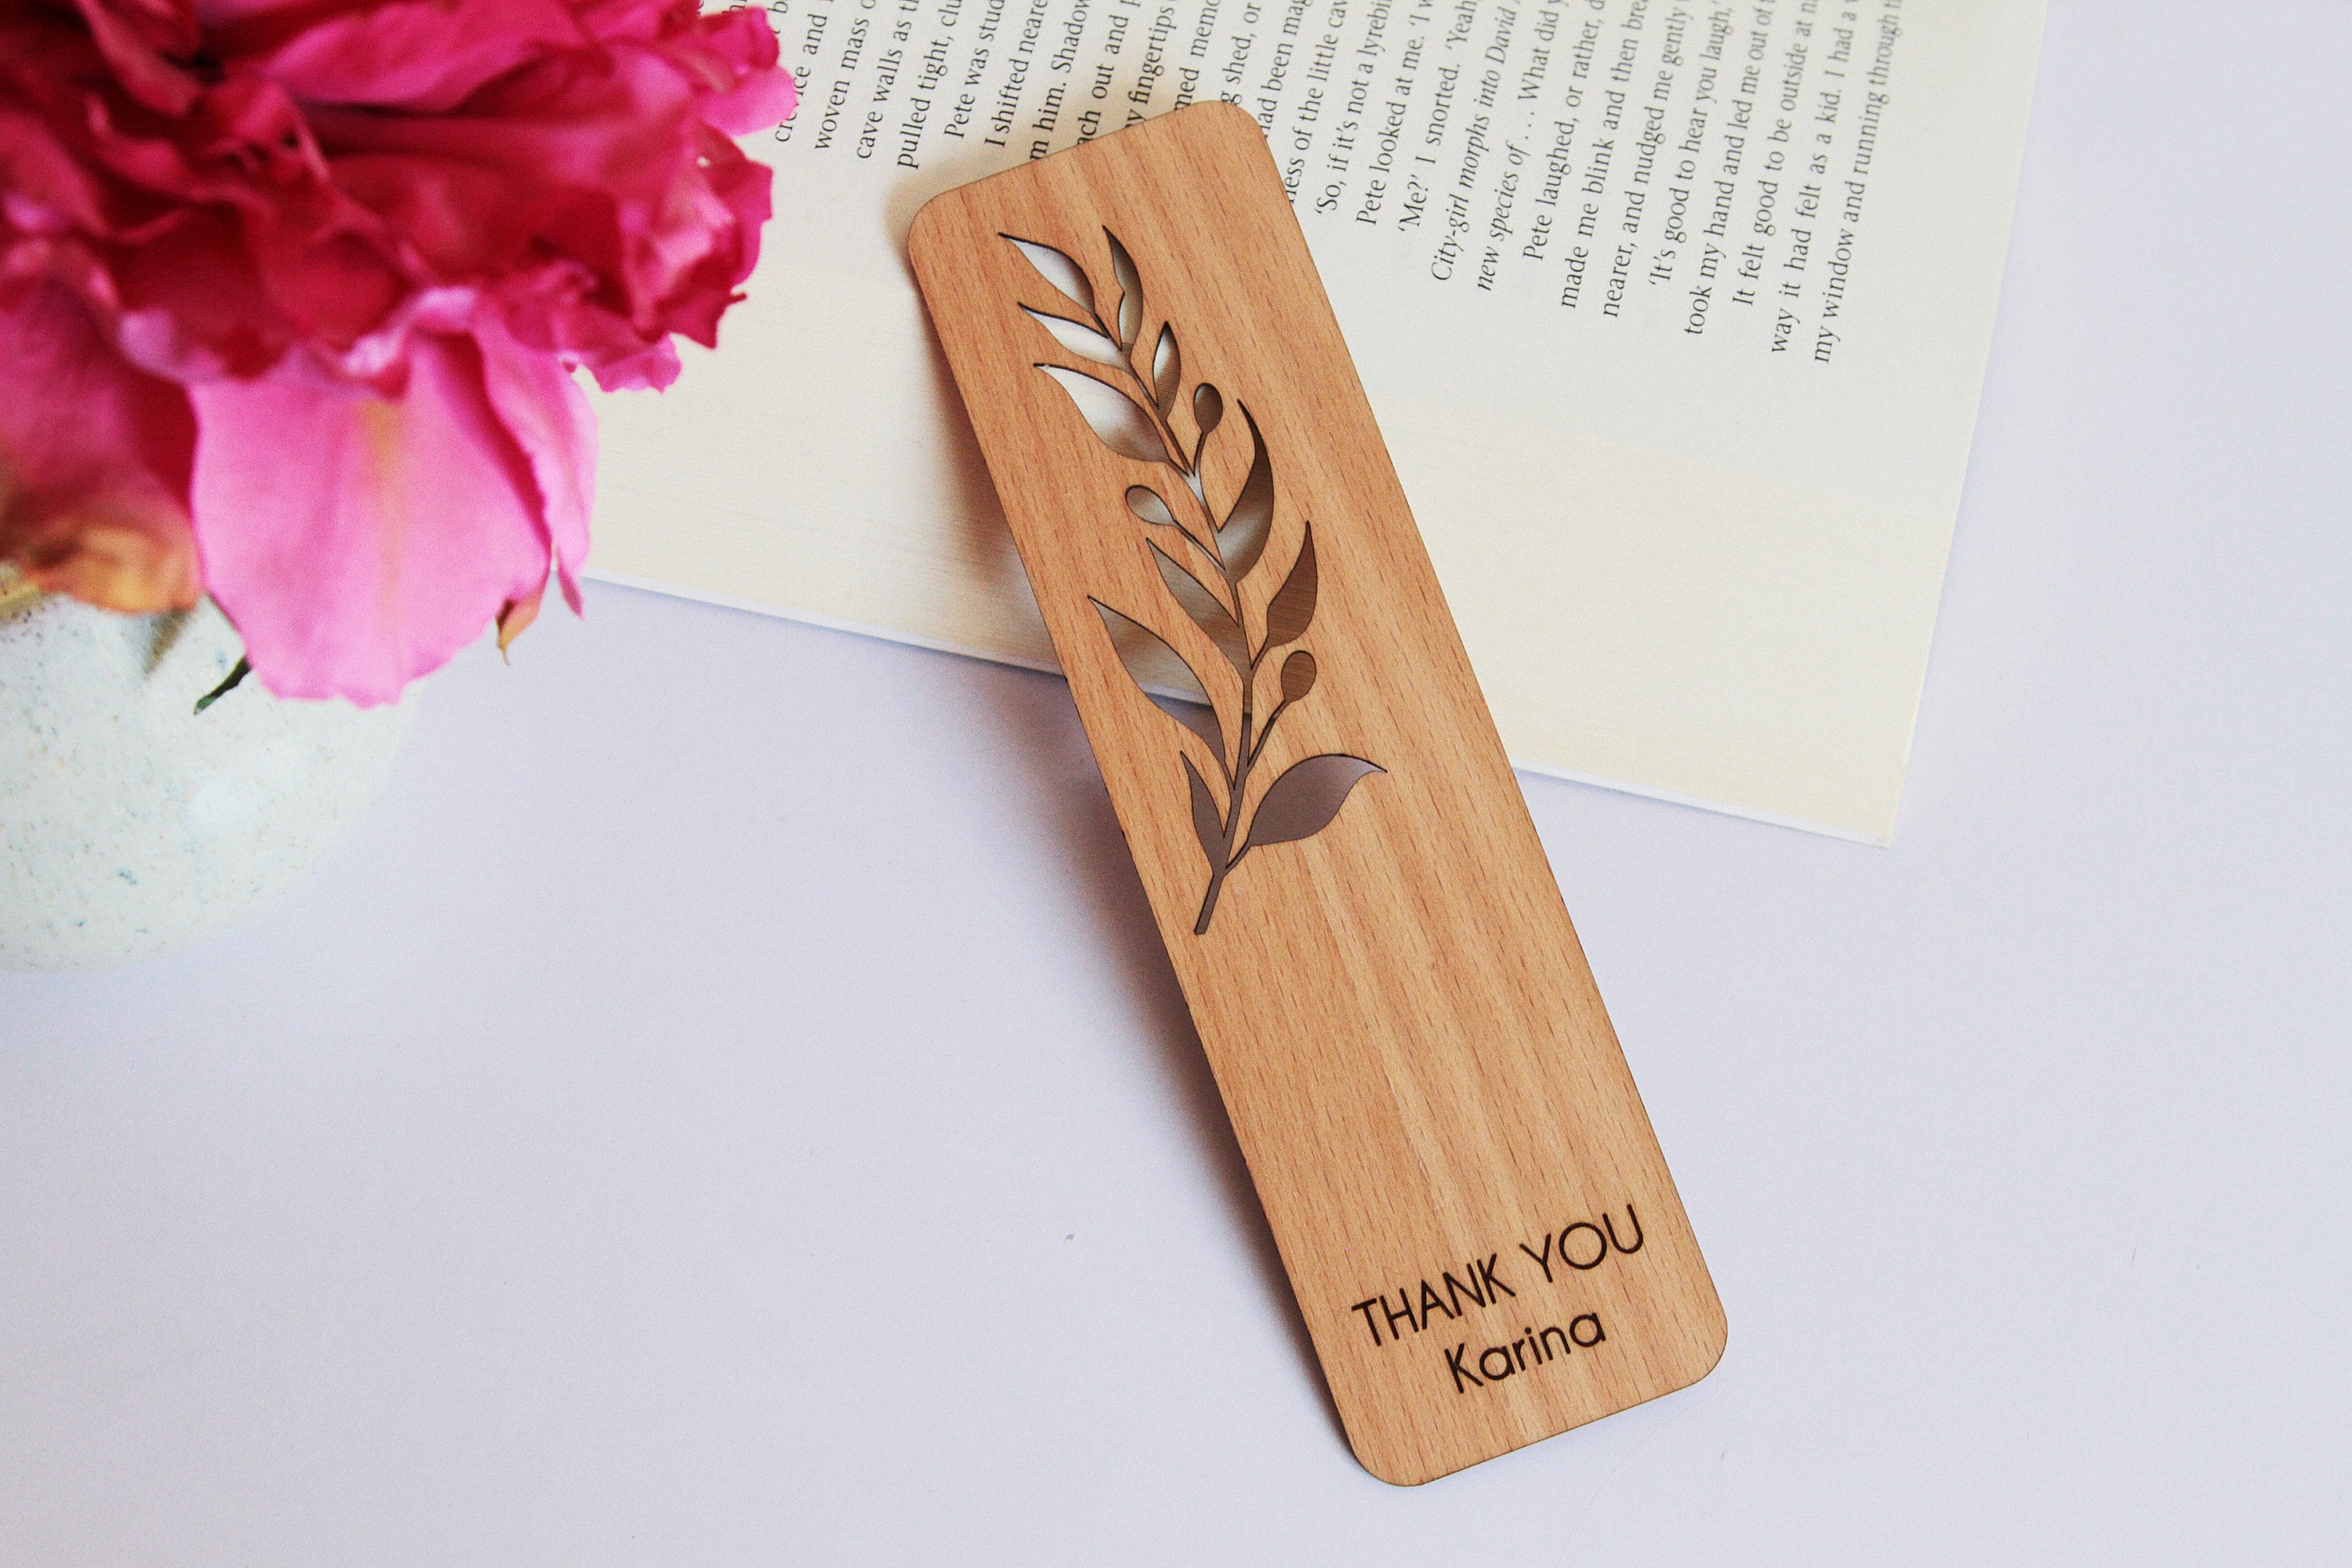 Barn Owl Wood Bookmark